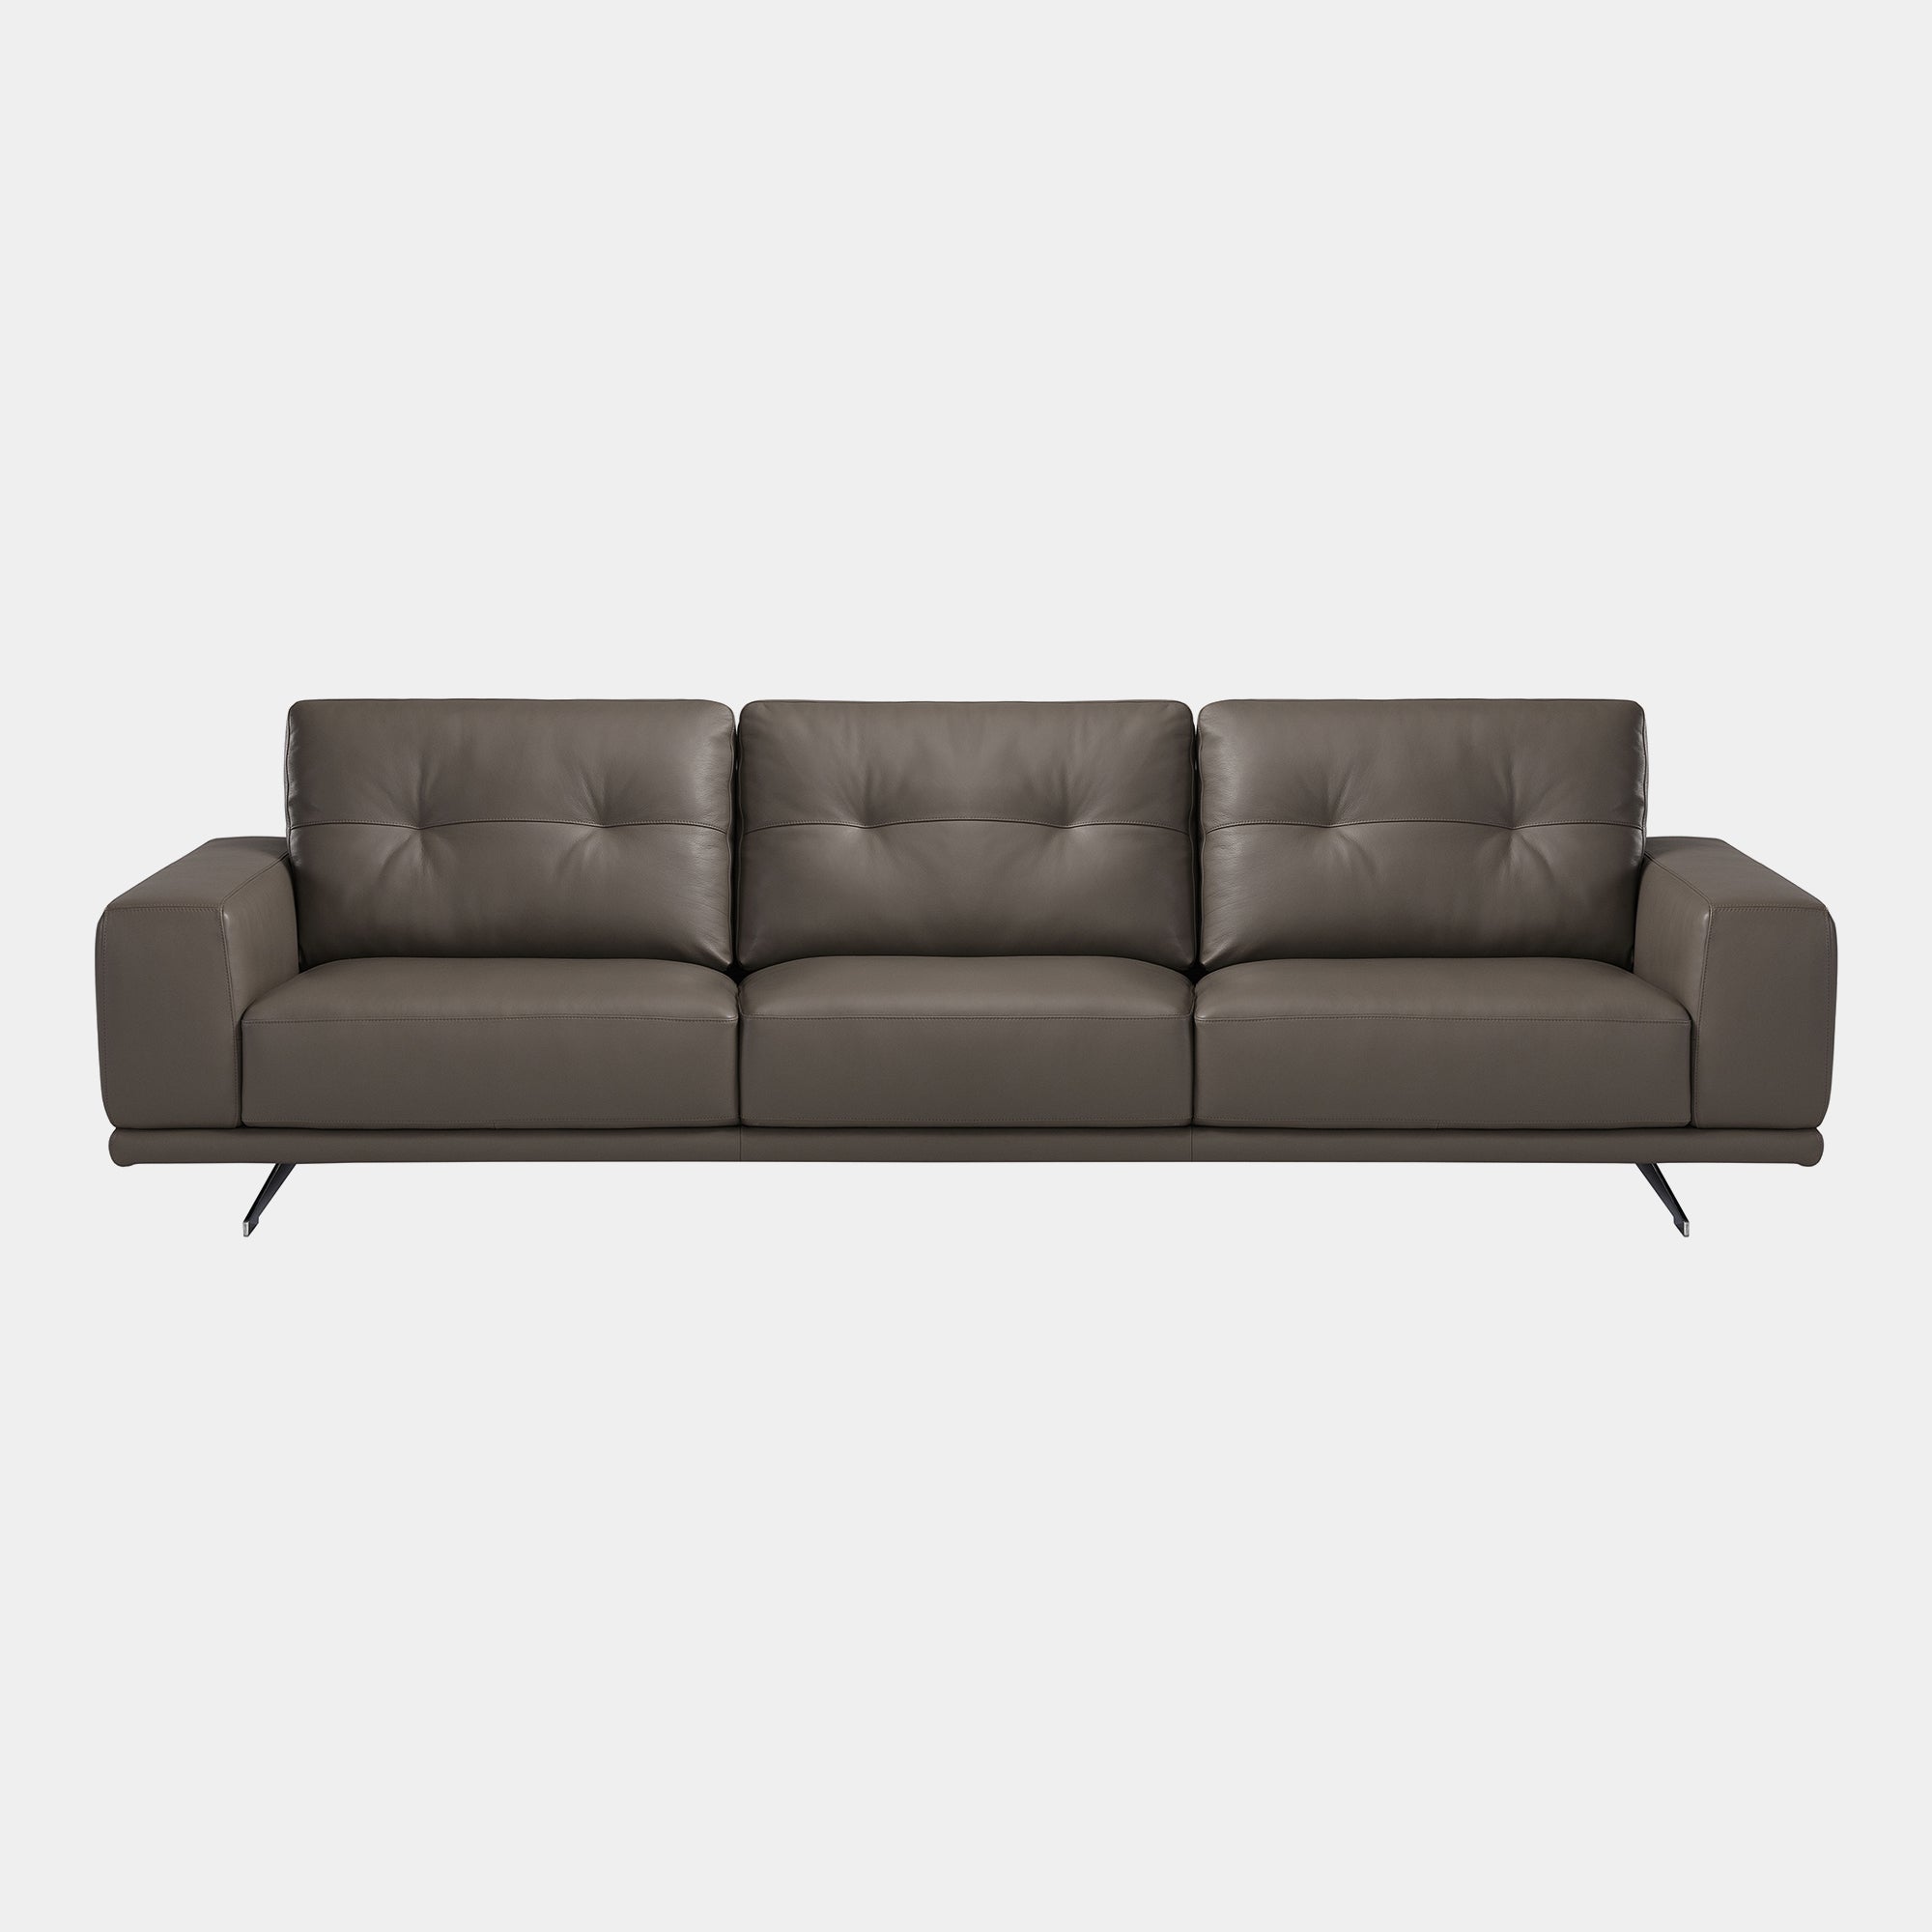 Altamura - Large 3 Seat Sofa In Leather Cat L09